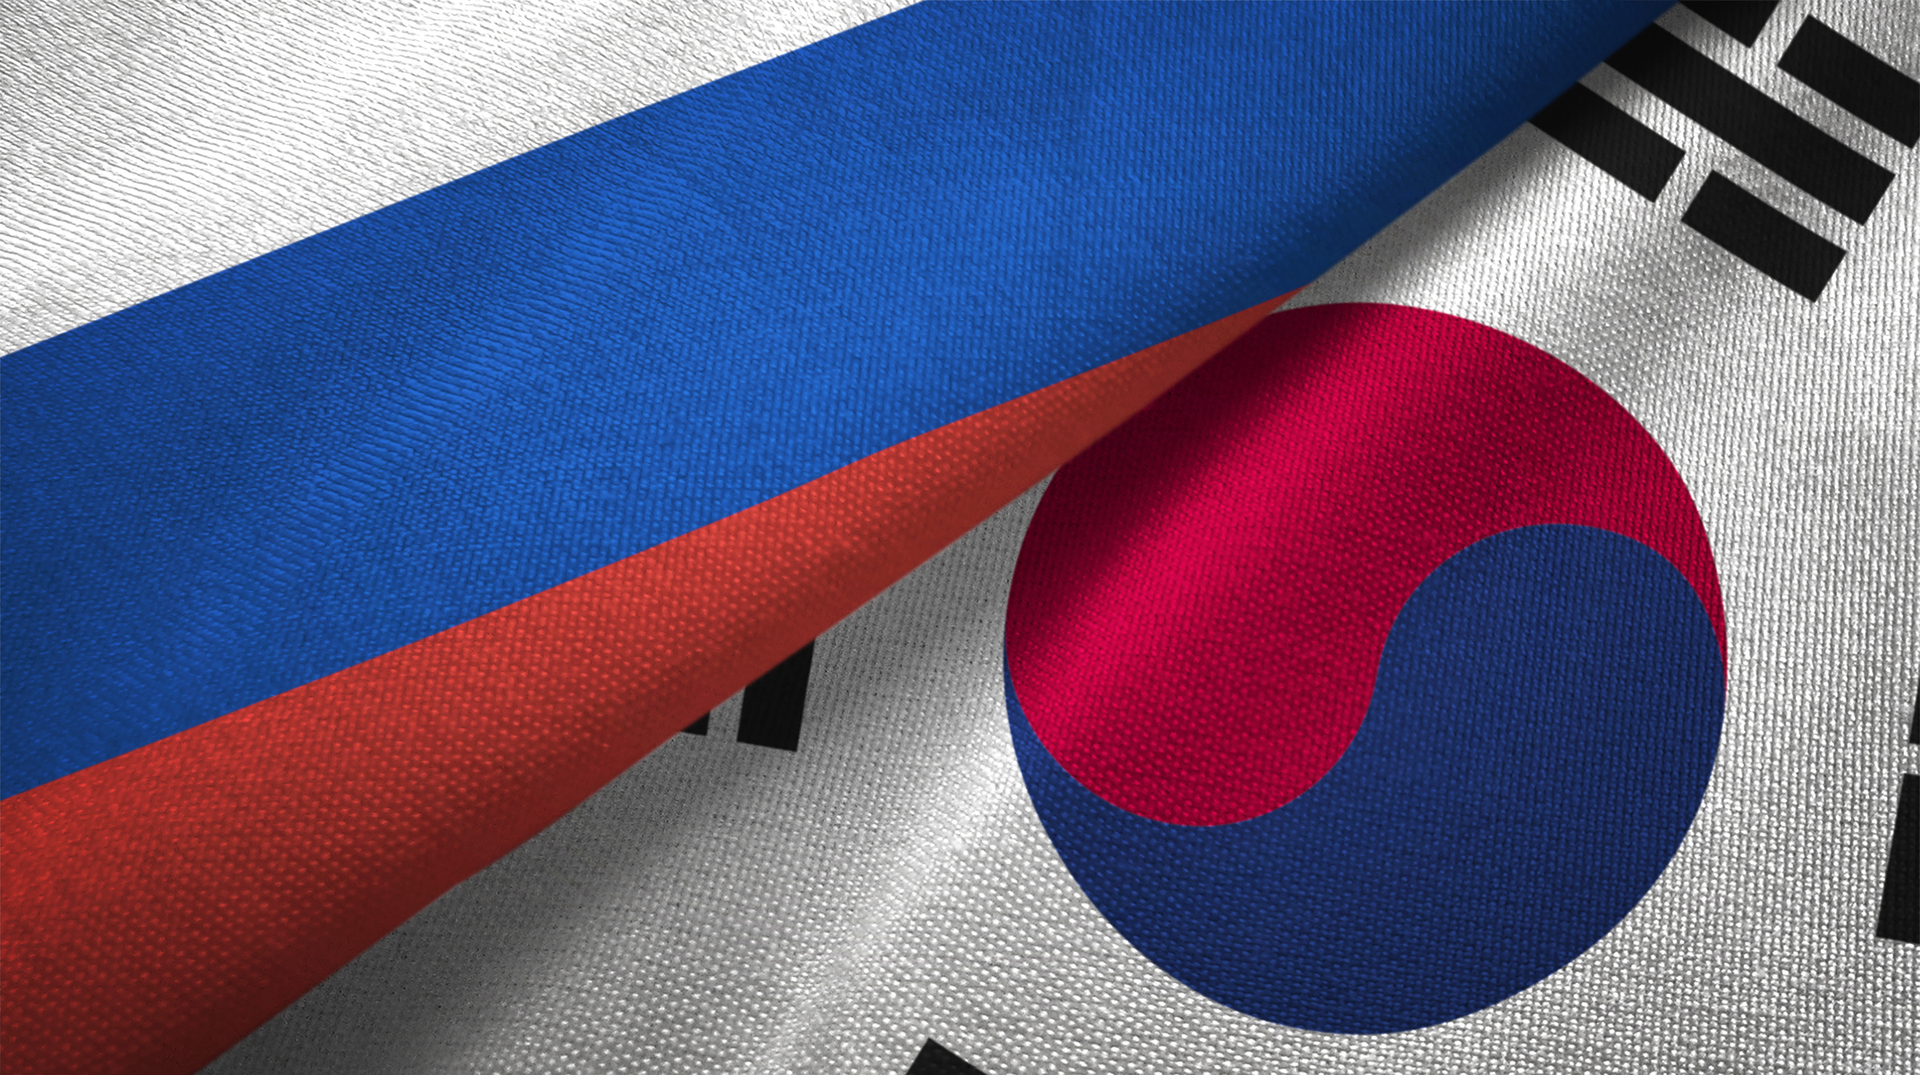 السفير الروسي في سيئول: روسيا وكوريا الجنوبية يمكنهما تحسين العلاقات بشكل سريع